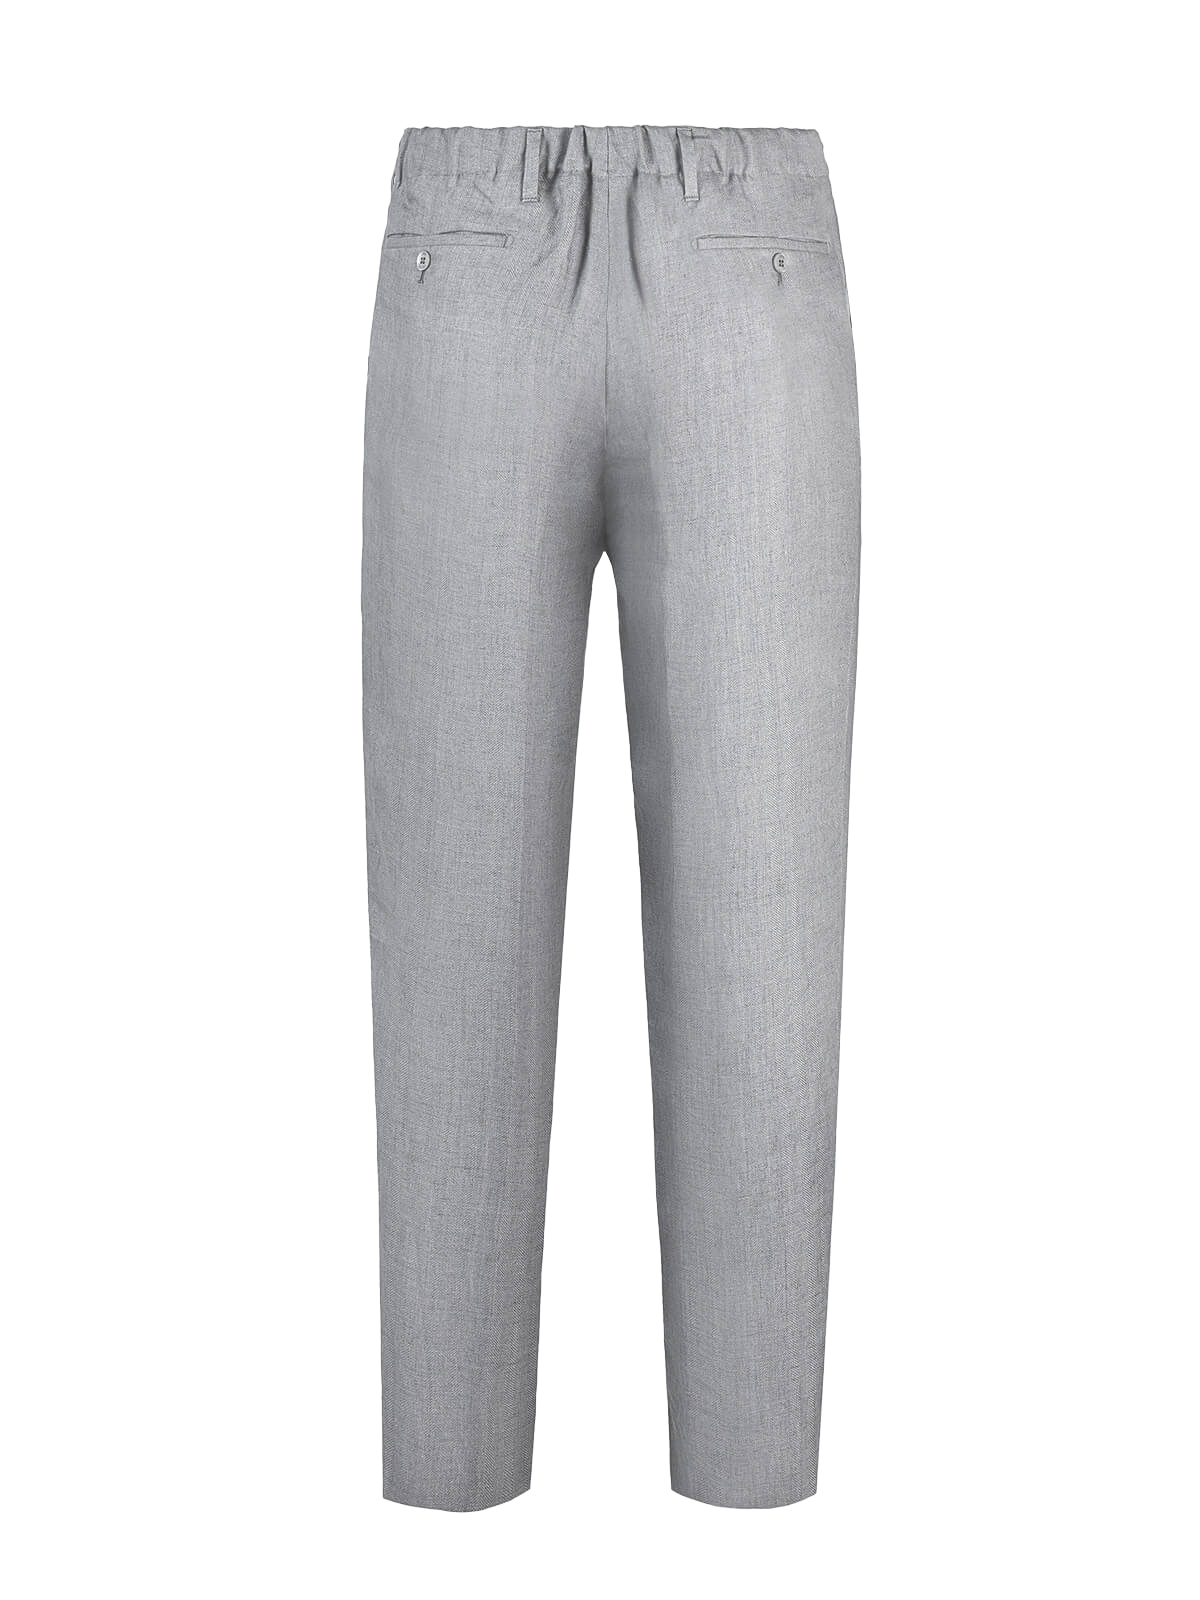 Pantalone Positano 100% capri for Man linen light grey trouser back